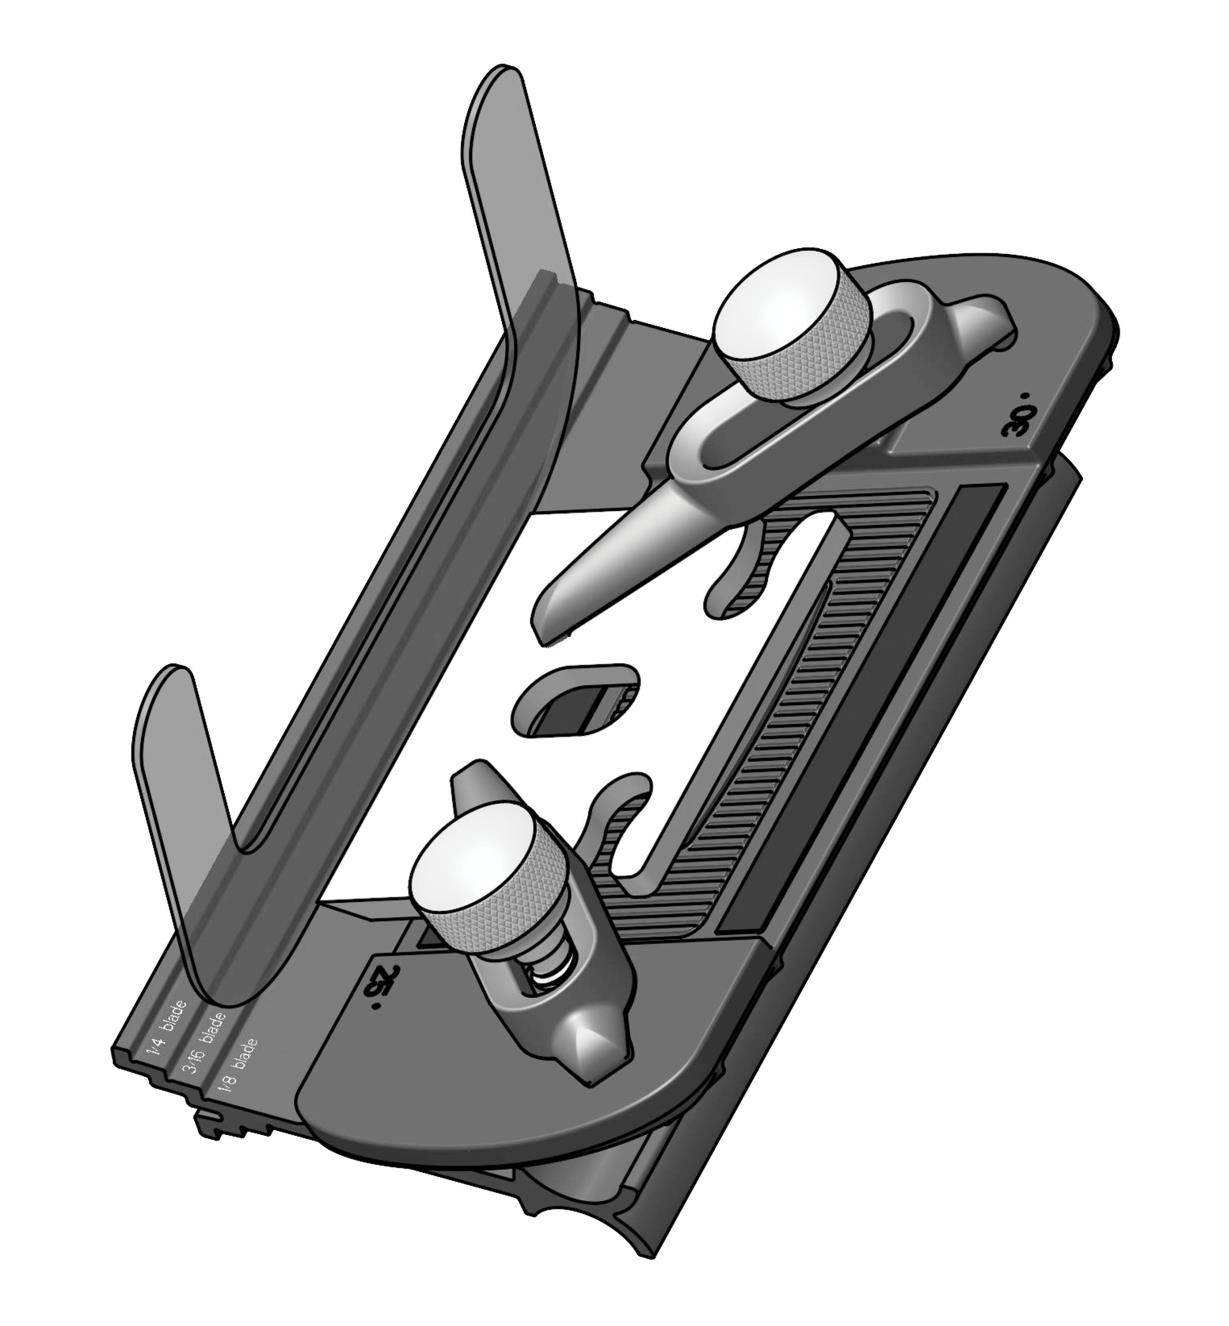 Illustration du guide d'affûtage pour lames courtes Veritas avec une lame en position appuyée contre la cale sur le gabarit de réglage